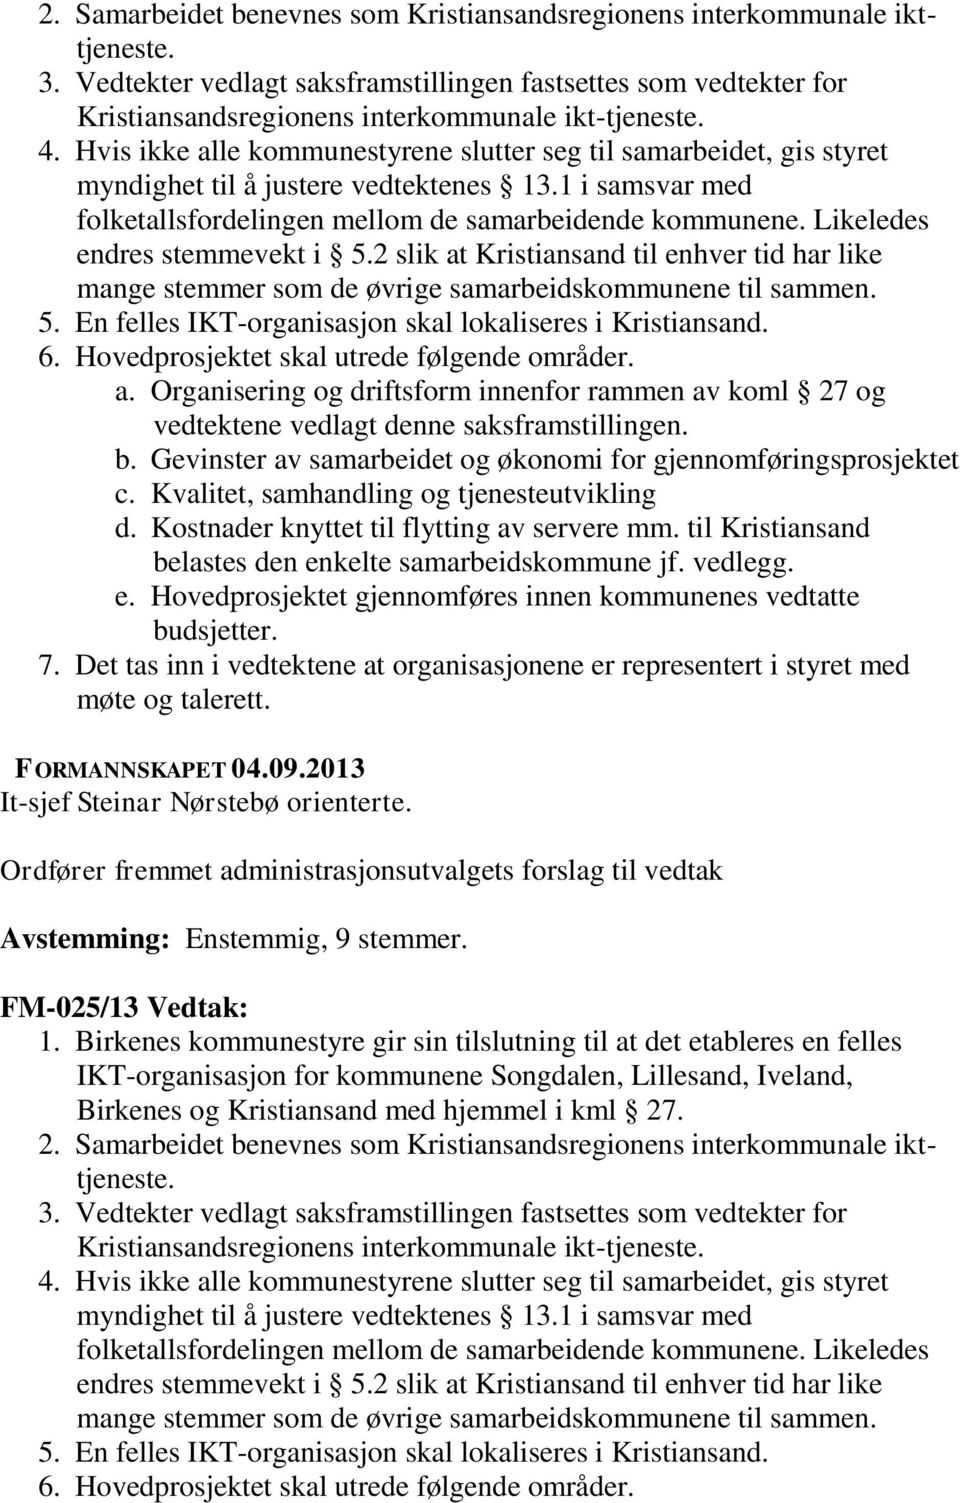 Likeledes endres stemmevekt i 5.2 slik at Kristiansand til enhver tid har like mange stemmer som de øvrige samarbeidskommunene til sammen. 5. En felles IKT-organisasjon skal lokaliseres i Kristiansand.